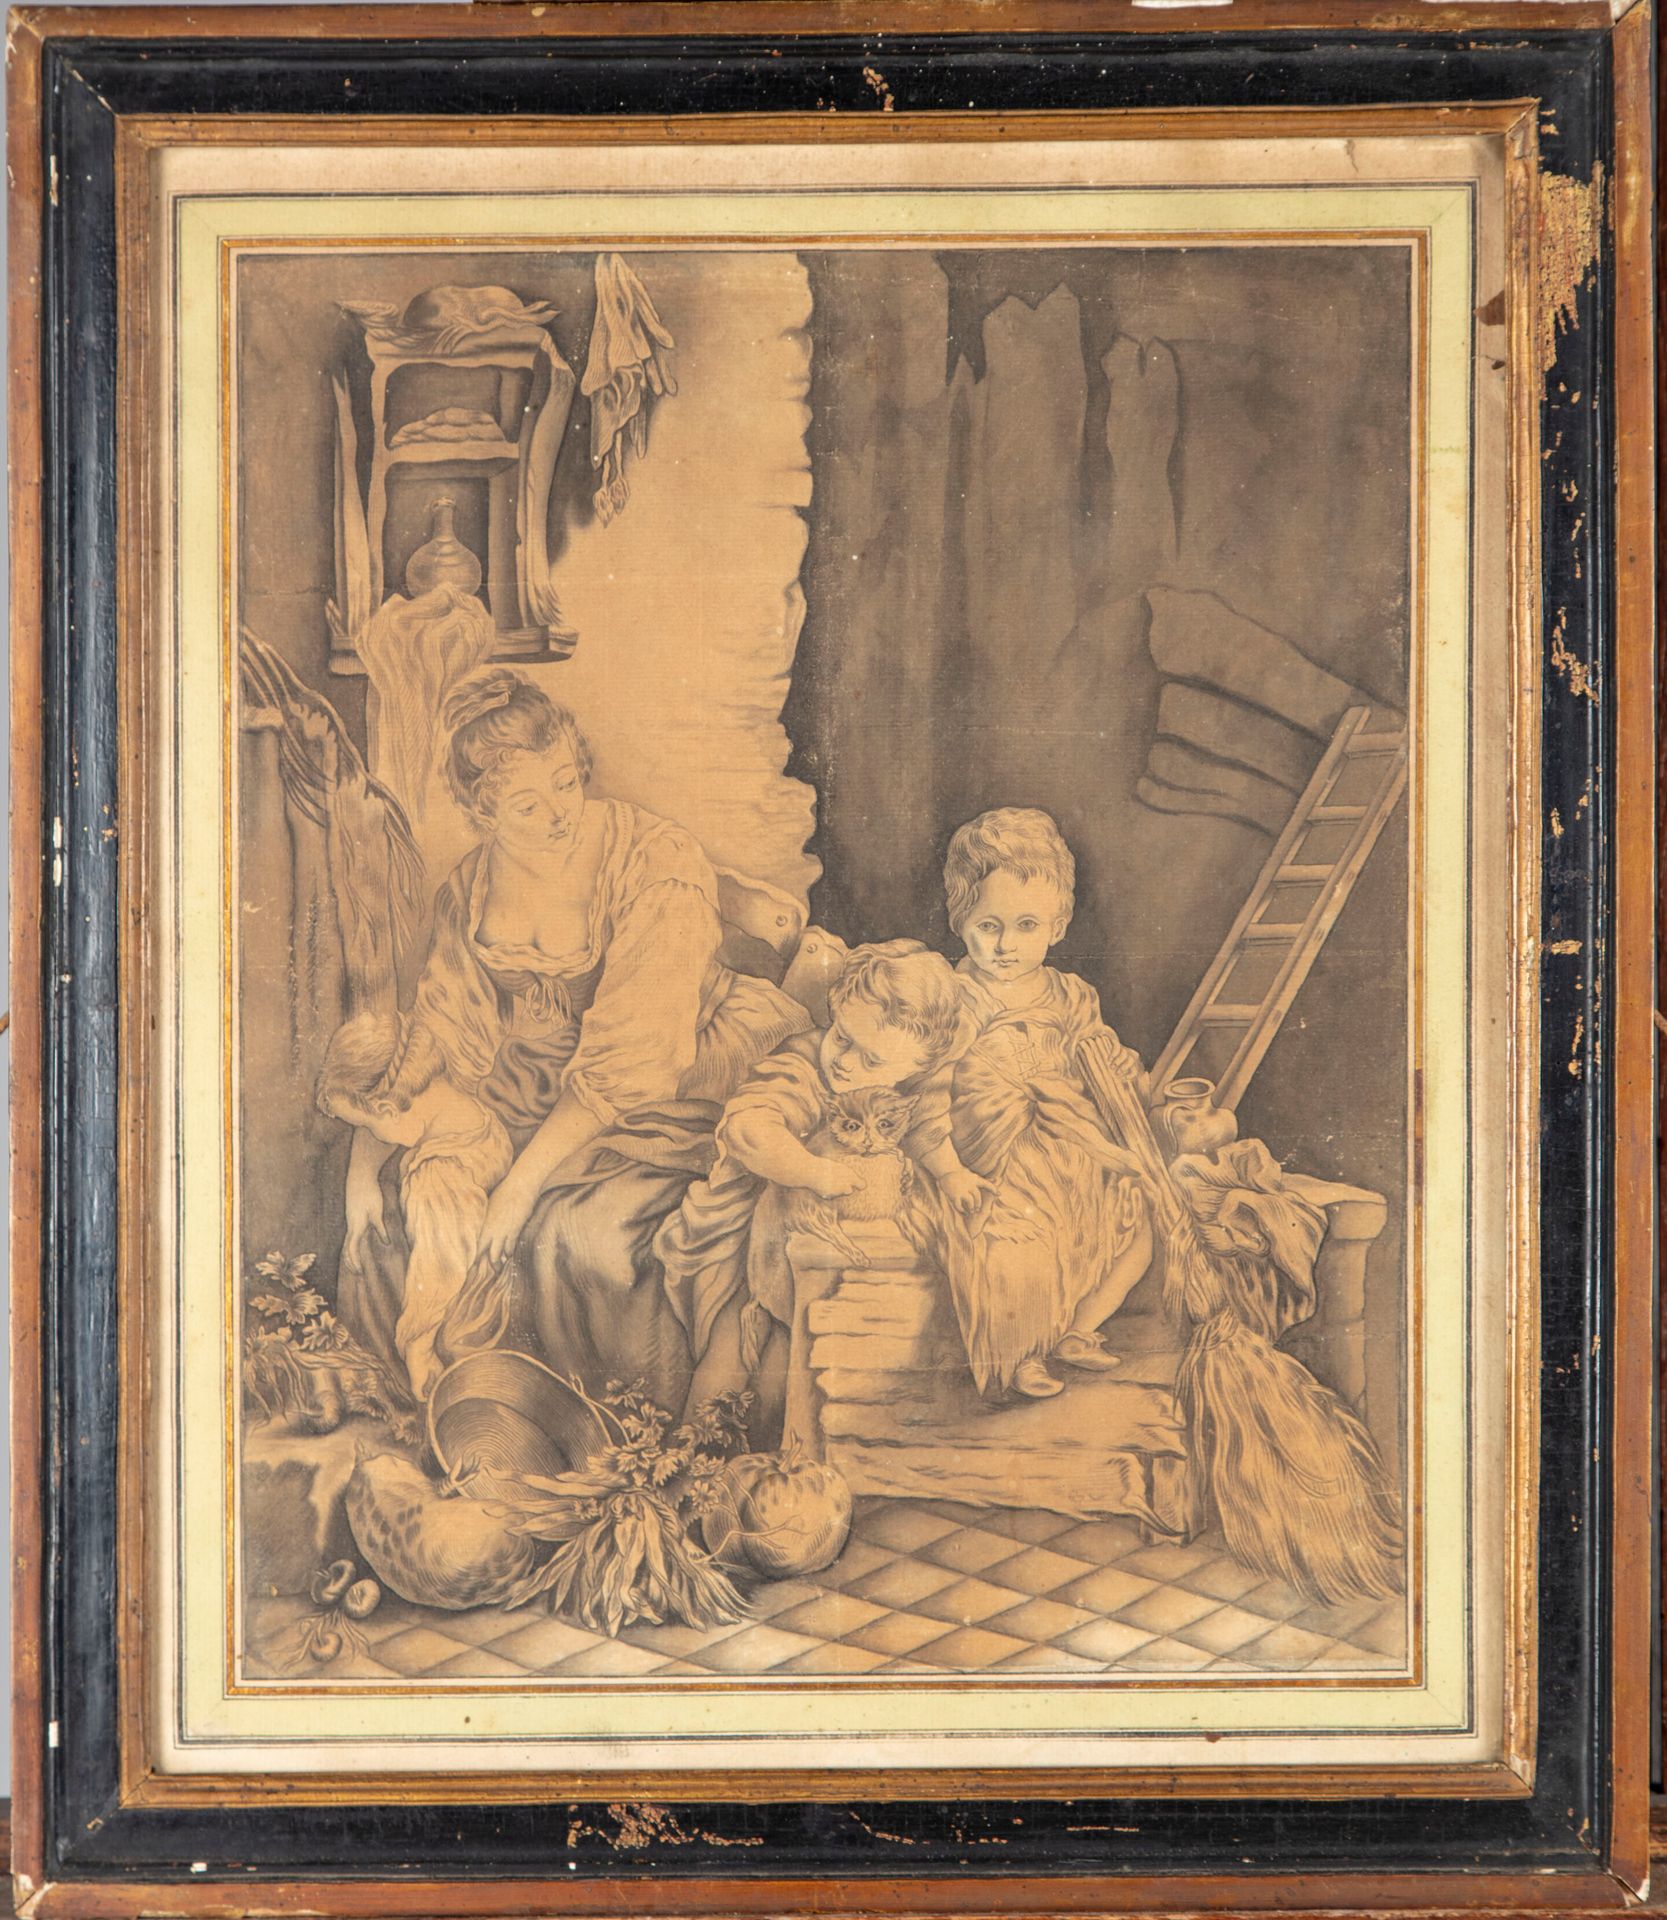 ECOLE FRANCAISE 18世纪法国学校

女人和孩子在一个乡村的室内

铅笔和水洗

40,5 x 33,5 cm 正在展出

褶皱和轻微磨损